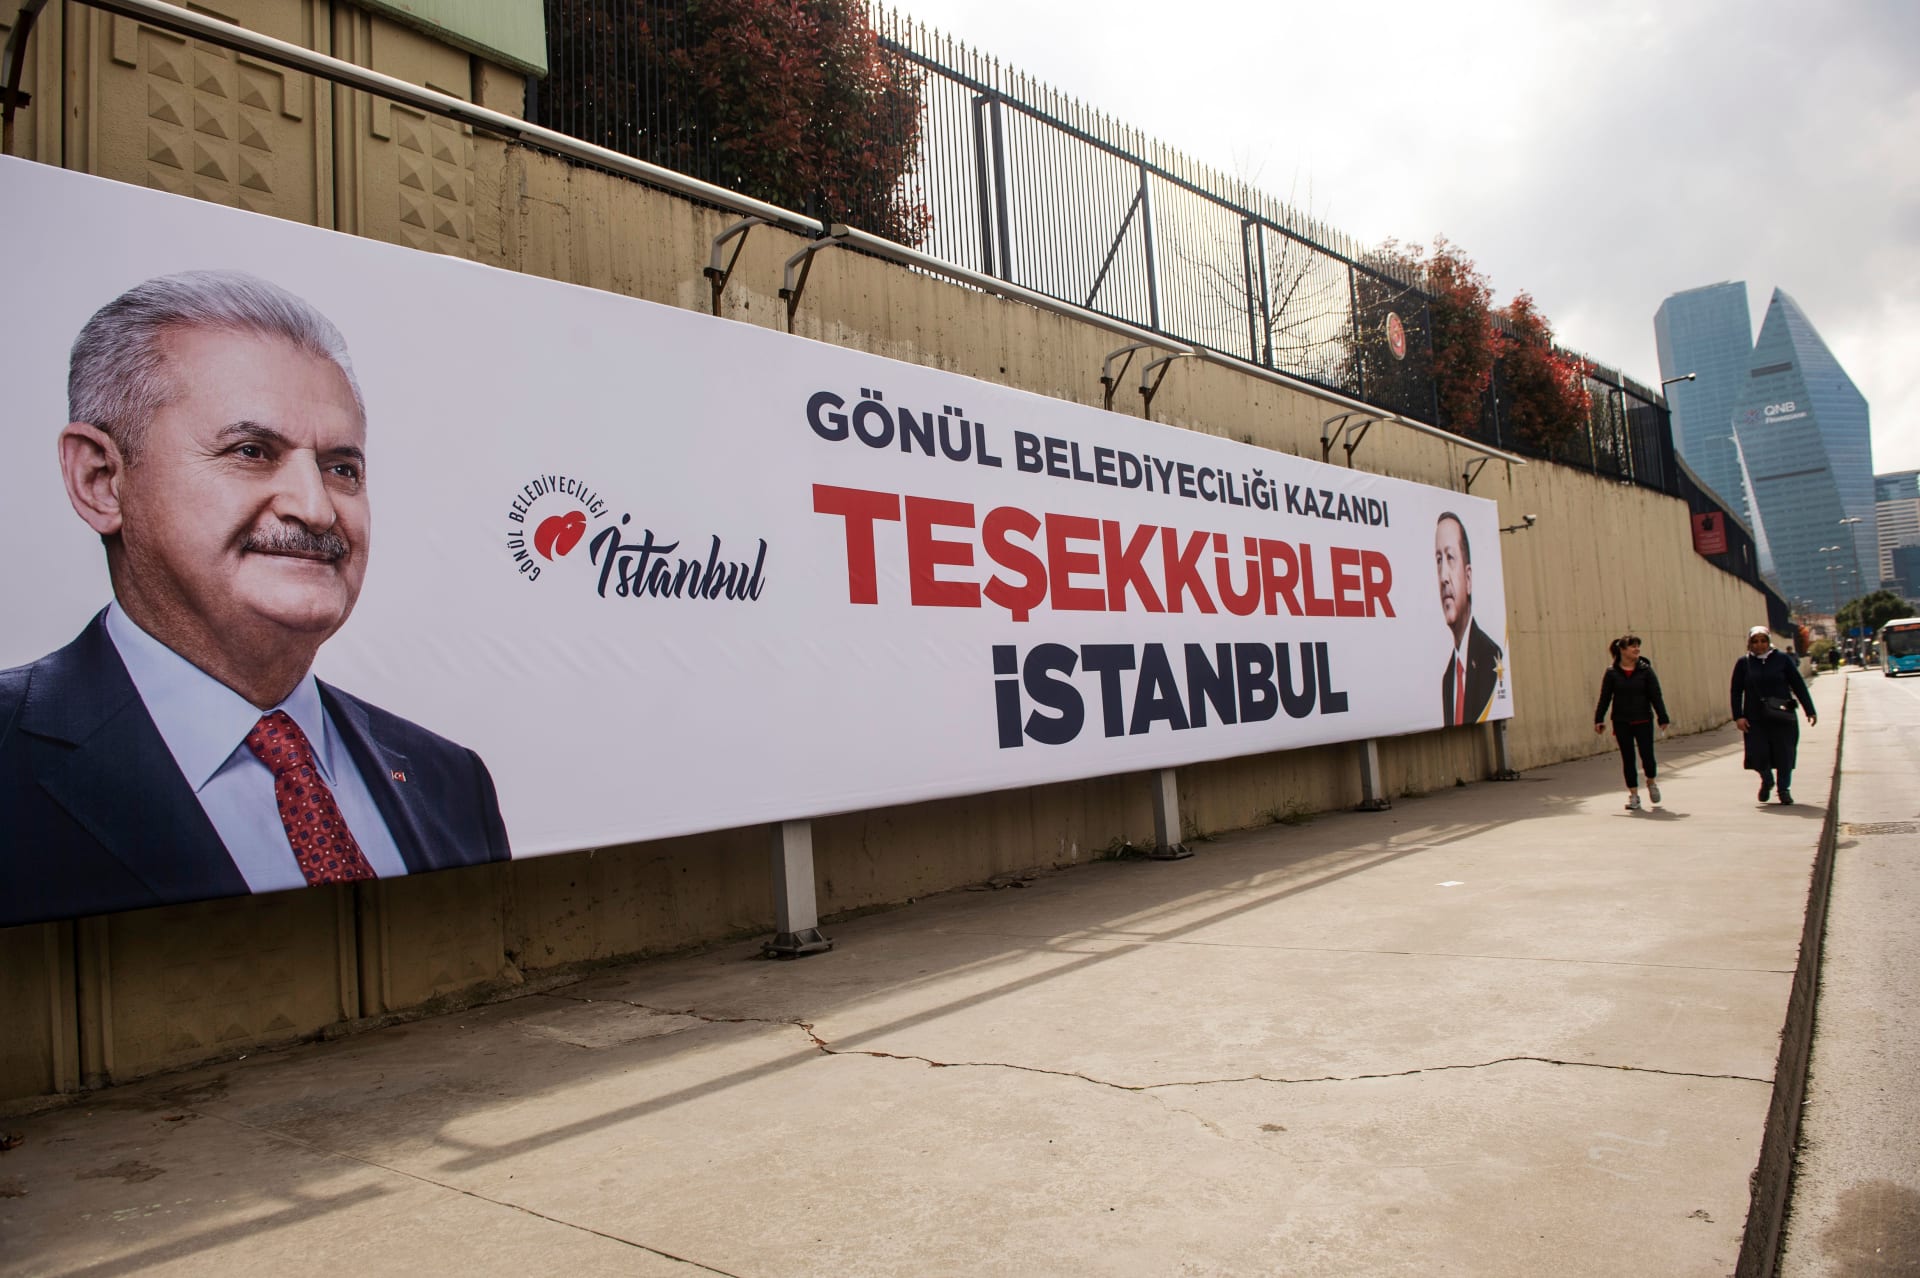 حزب أردوغان يلوح بالاعتراض على نتائج الانتخابات في إسطنبول لوجود "مخالفات أو أخطاء"